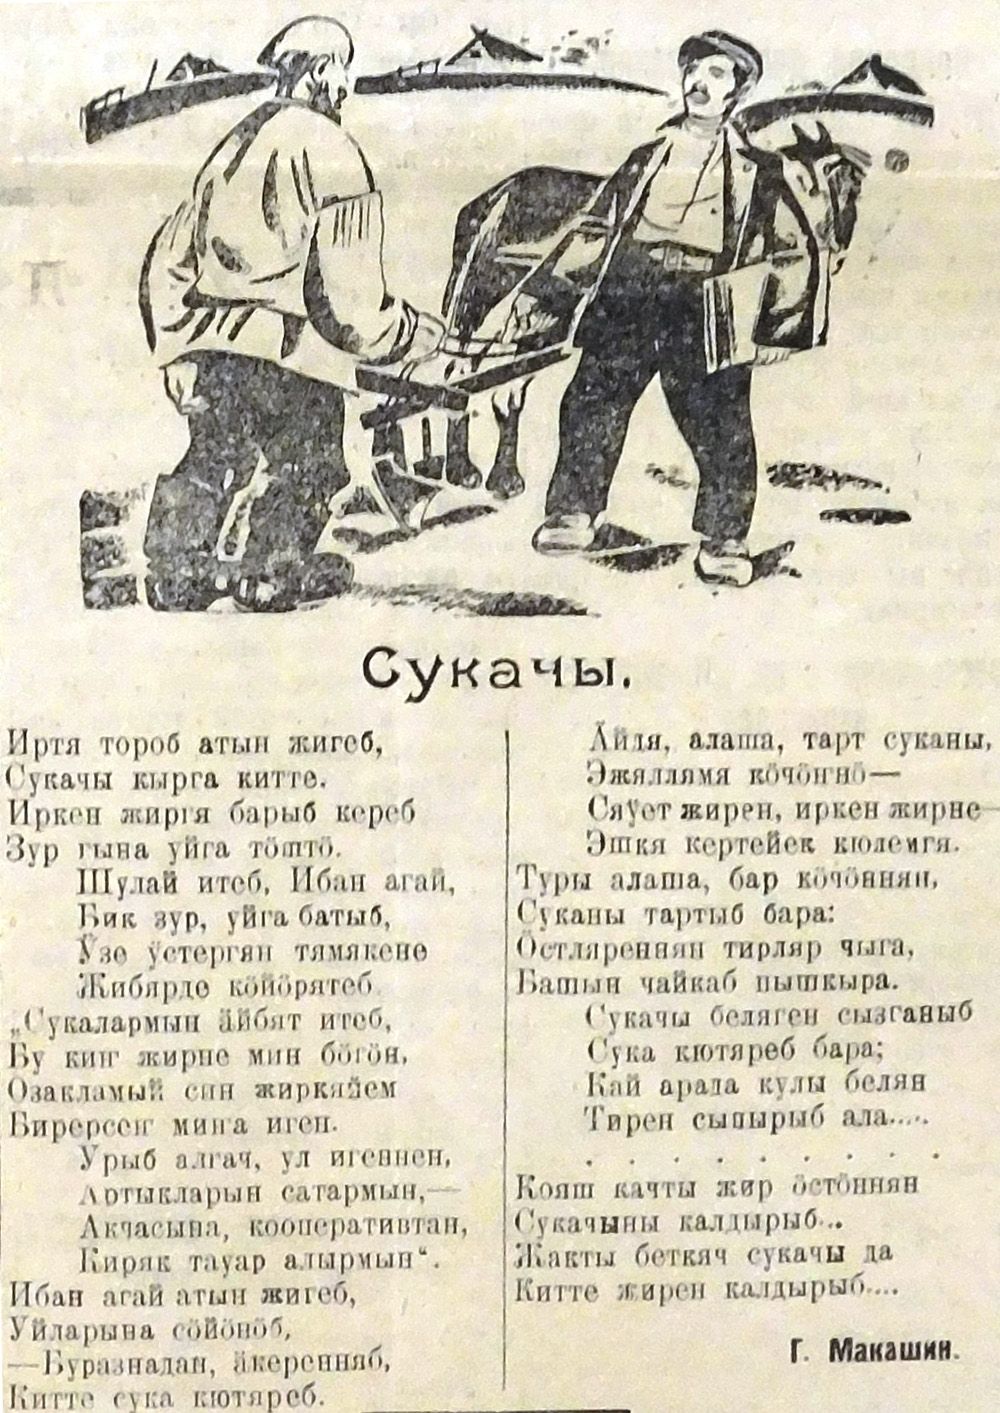 1926 елда Киңяш газетасында чыккан Г. Макашин язган "Сукачы" шигыре